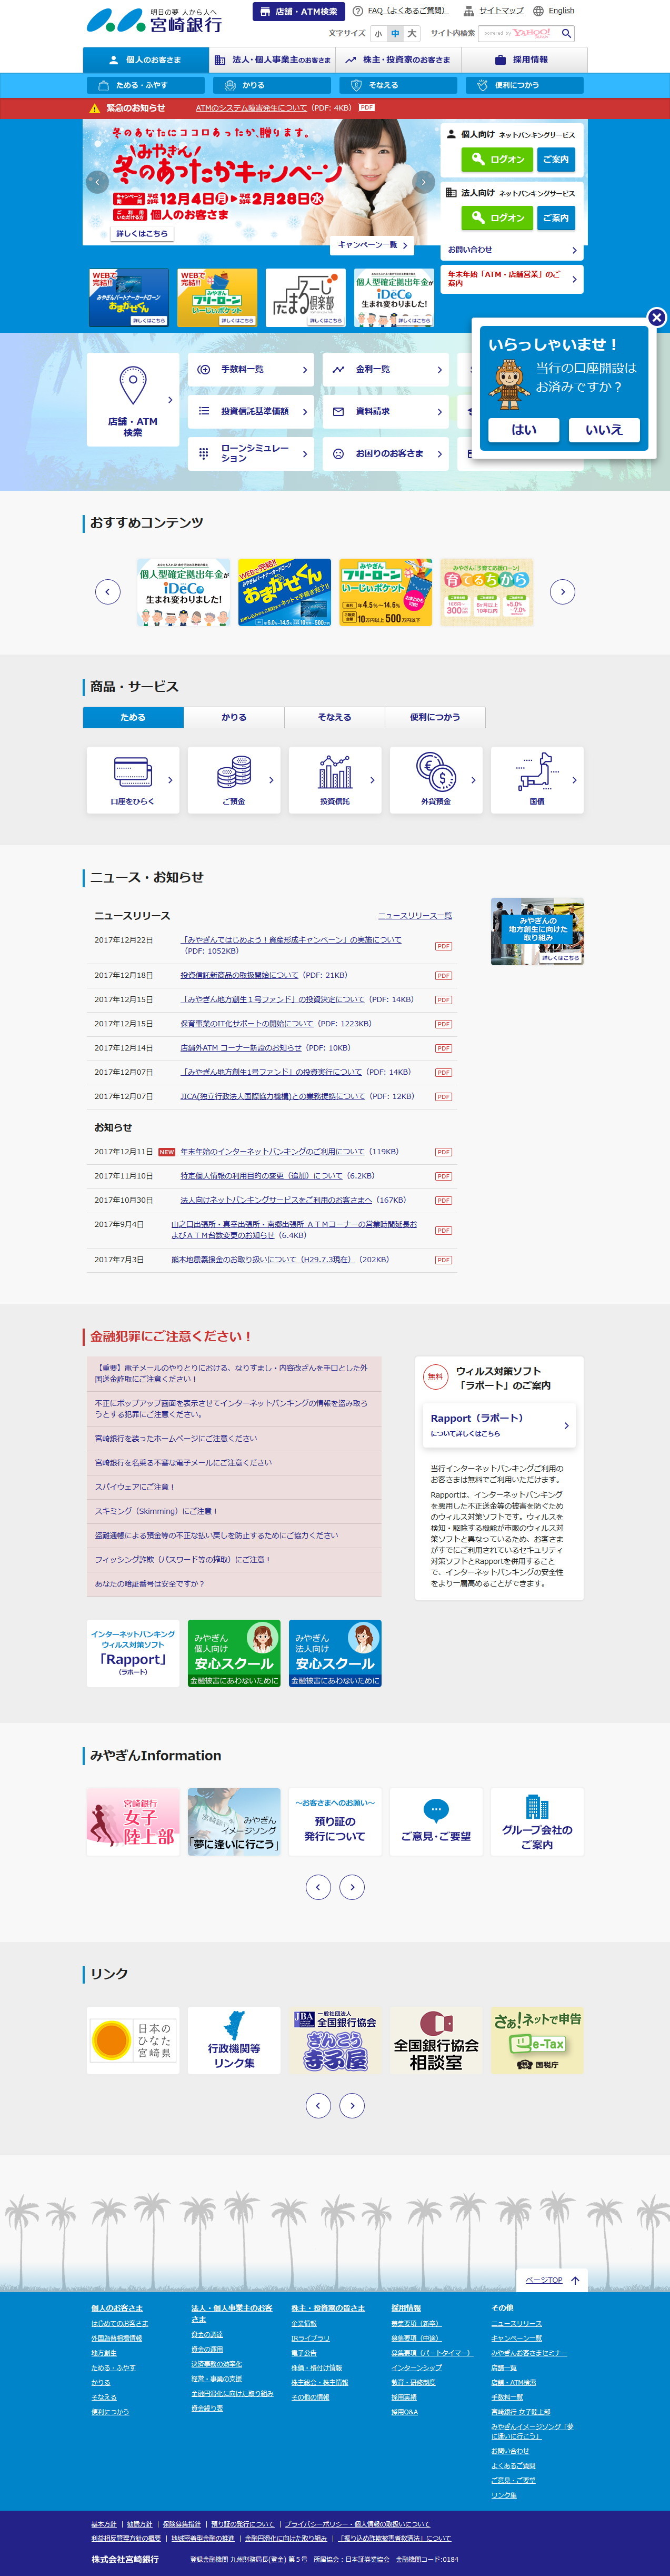 宮崎銀行のWebサイトのスクリーンショット